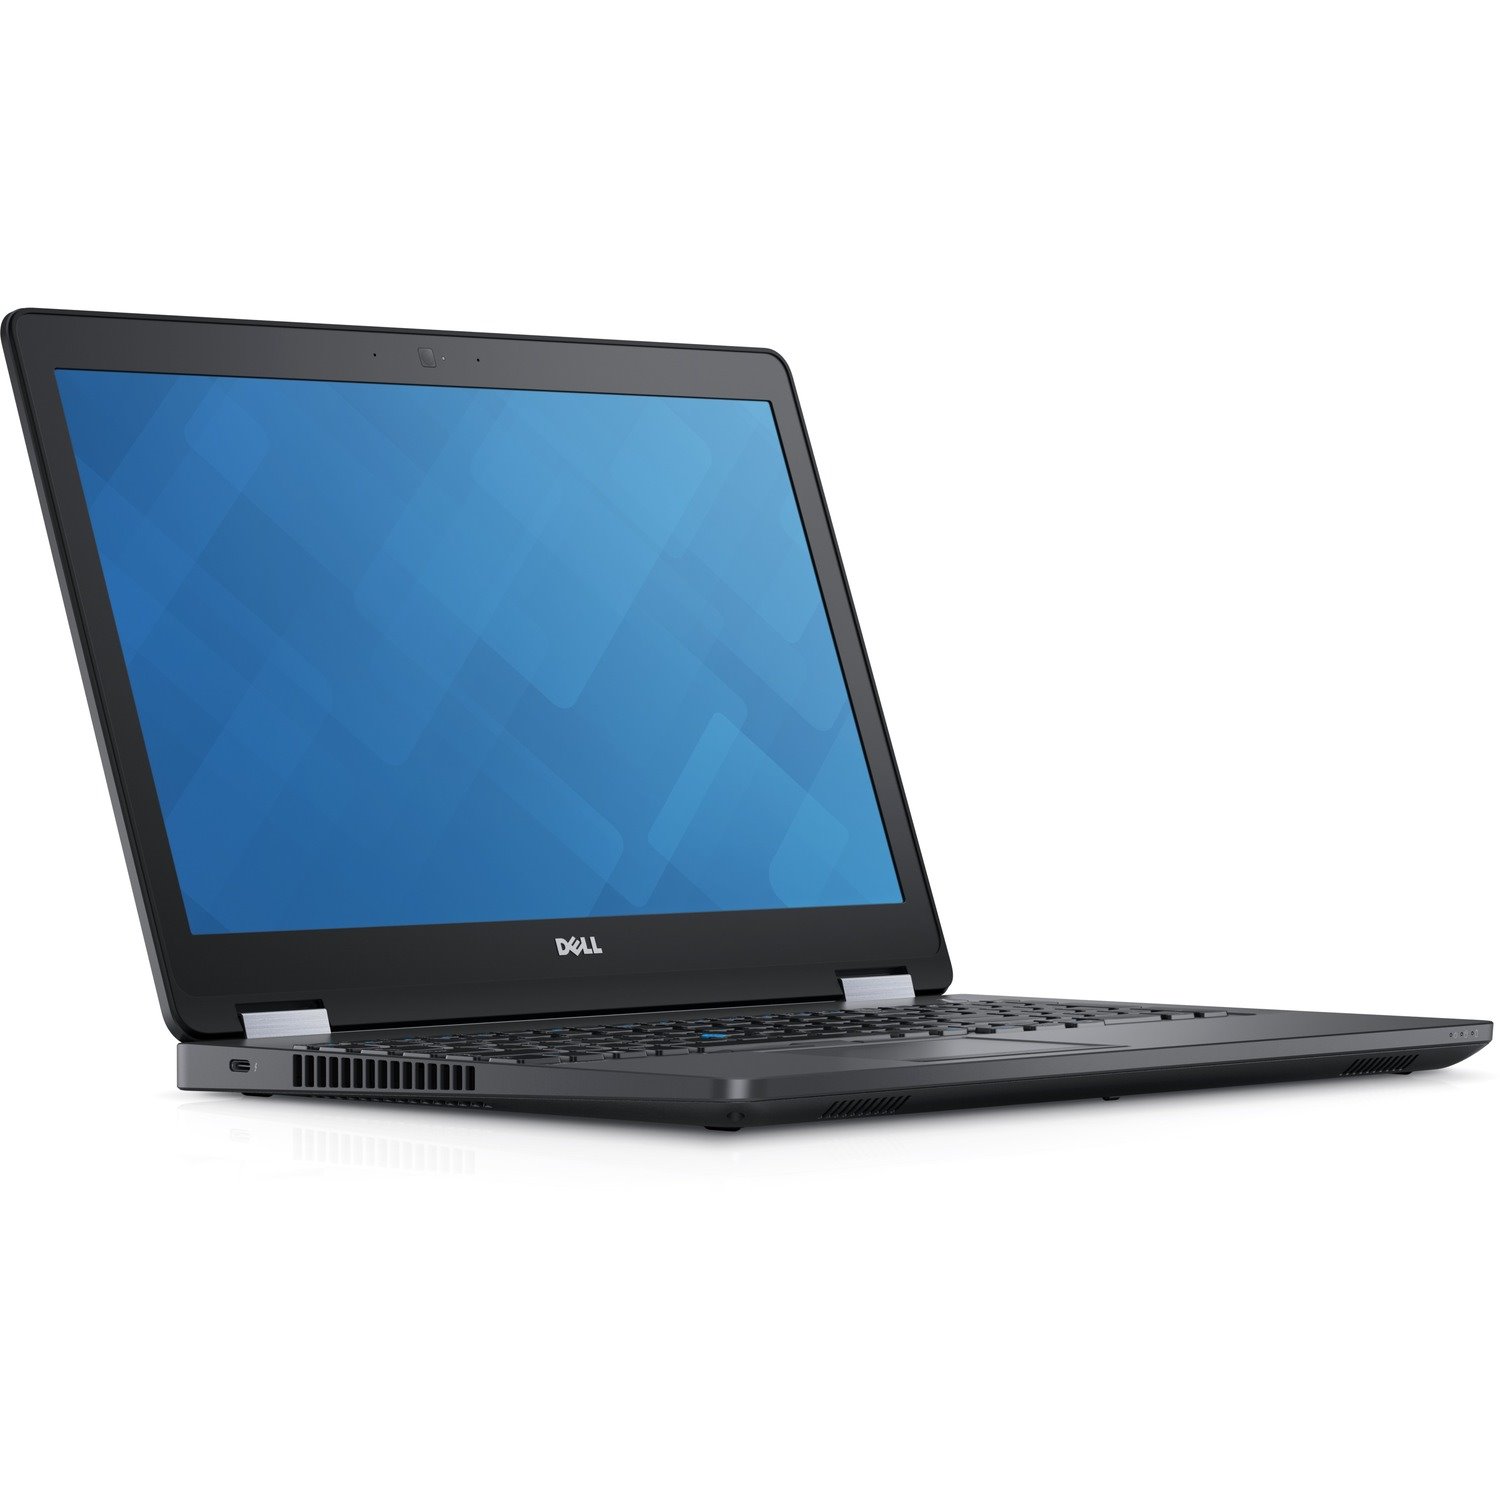 Dell Latitude 15 5000 e5570 39.6 cm (15.6") Notebook - 1366 x 768 - Intel Core i5 6th Gen i5-6300U Dual-core (2 Core) 2.40 GHz - 8 GB Total RAM - 128 GB SSD